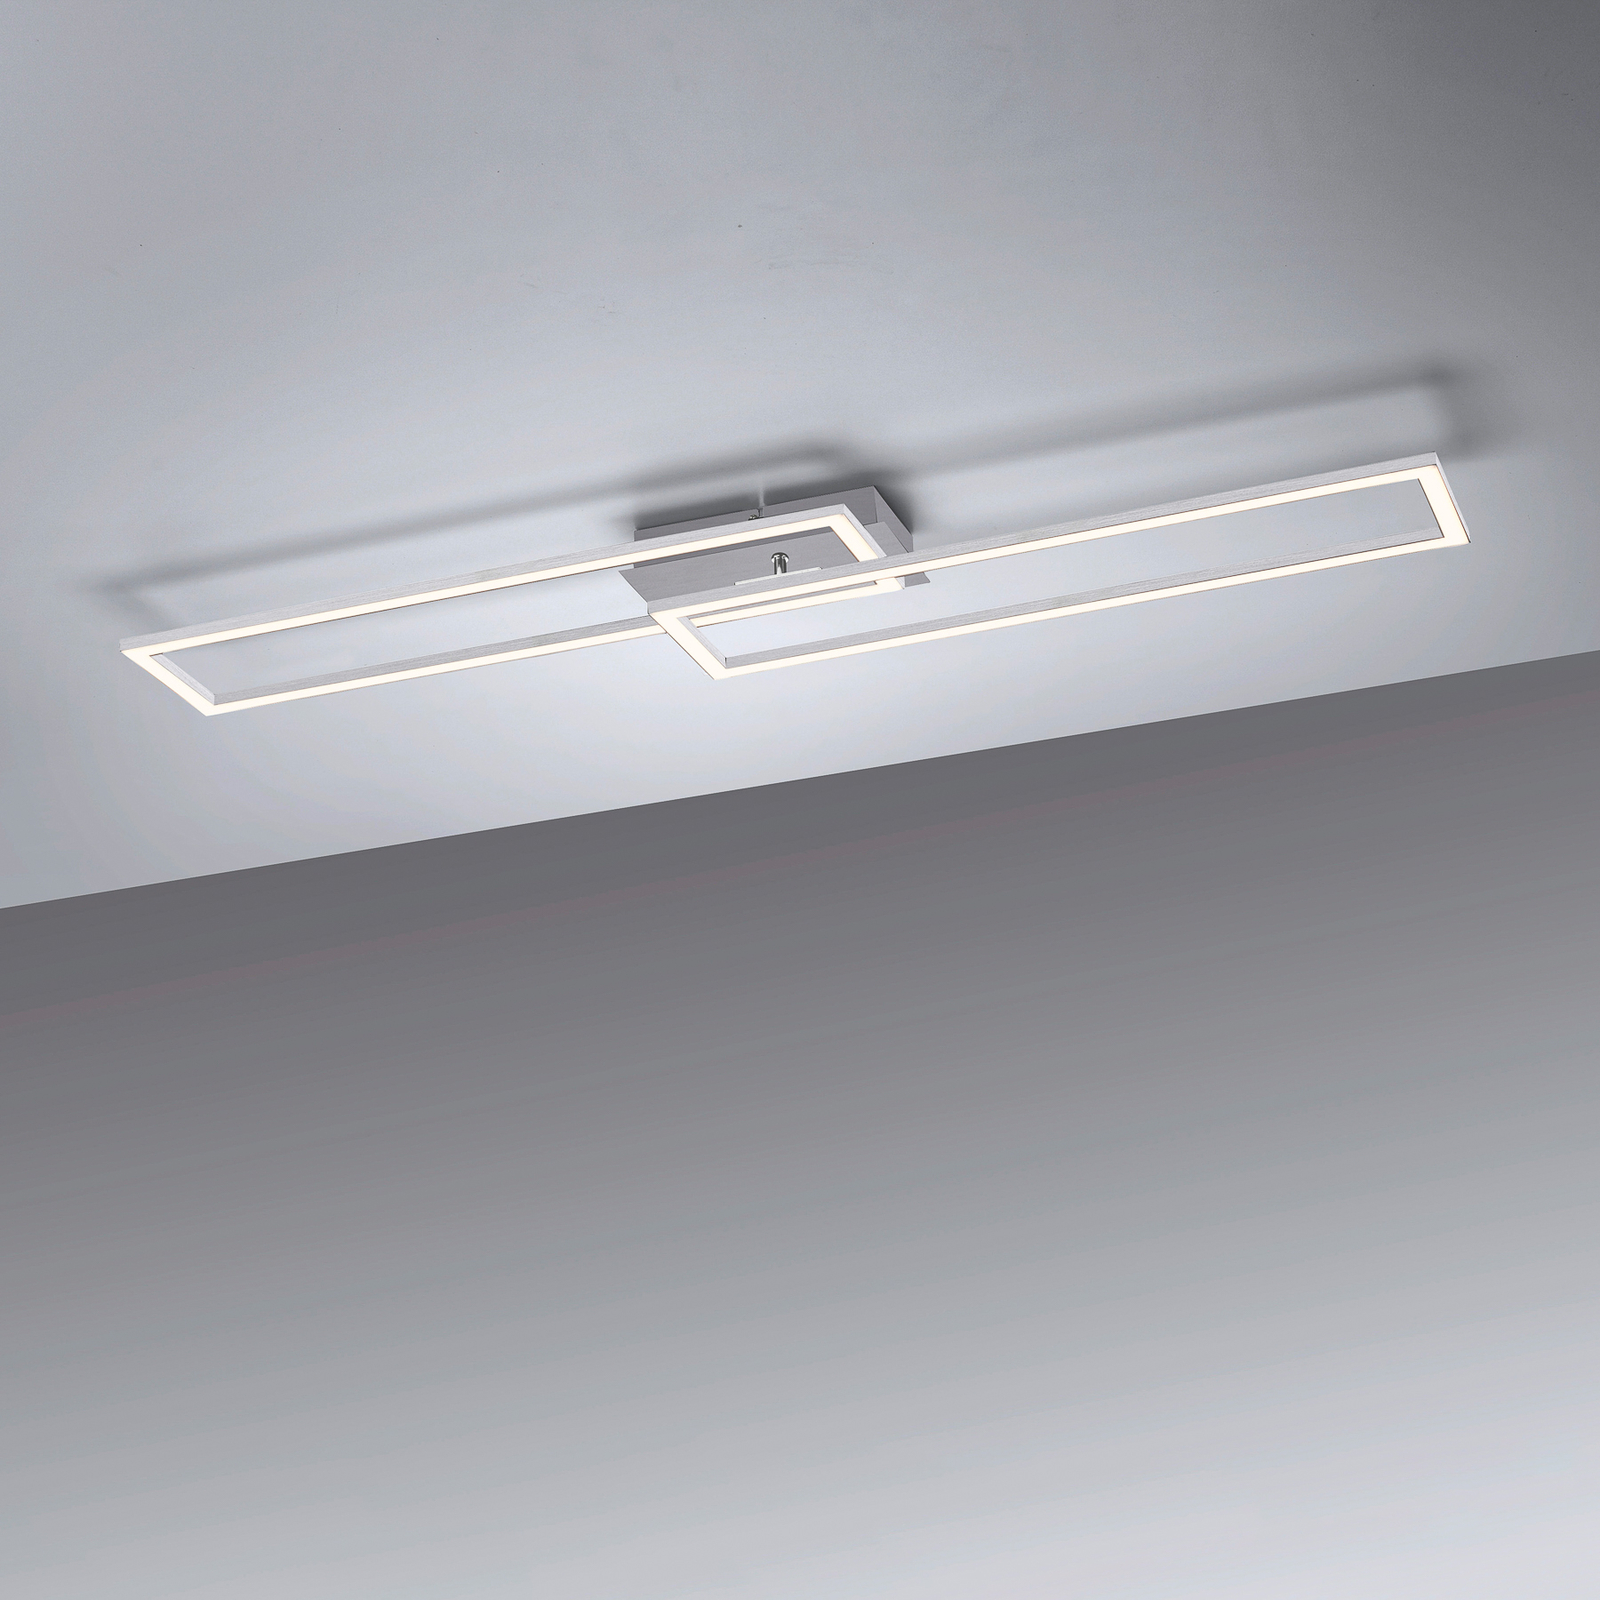 LED lubinis šviestuvas "Iven", plienas, tamsus, 101,6x19,8 cm